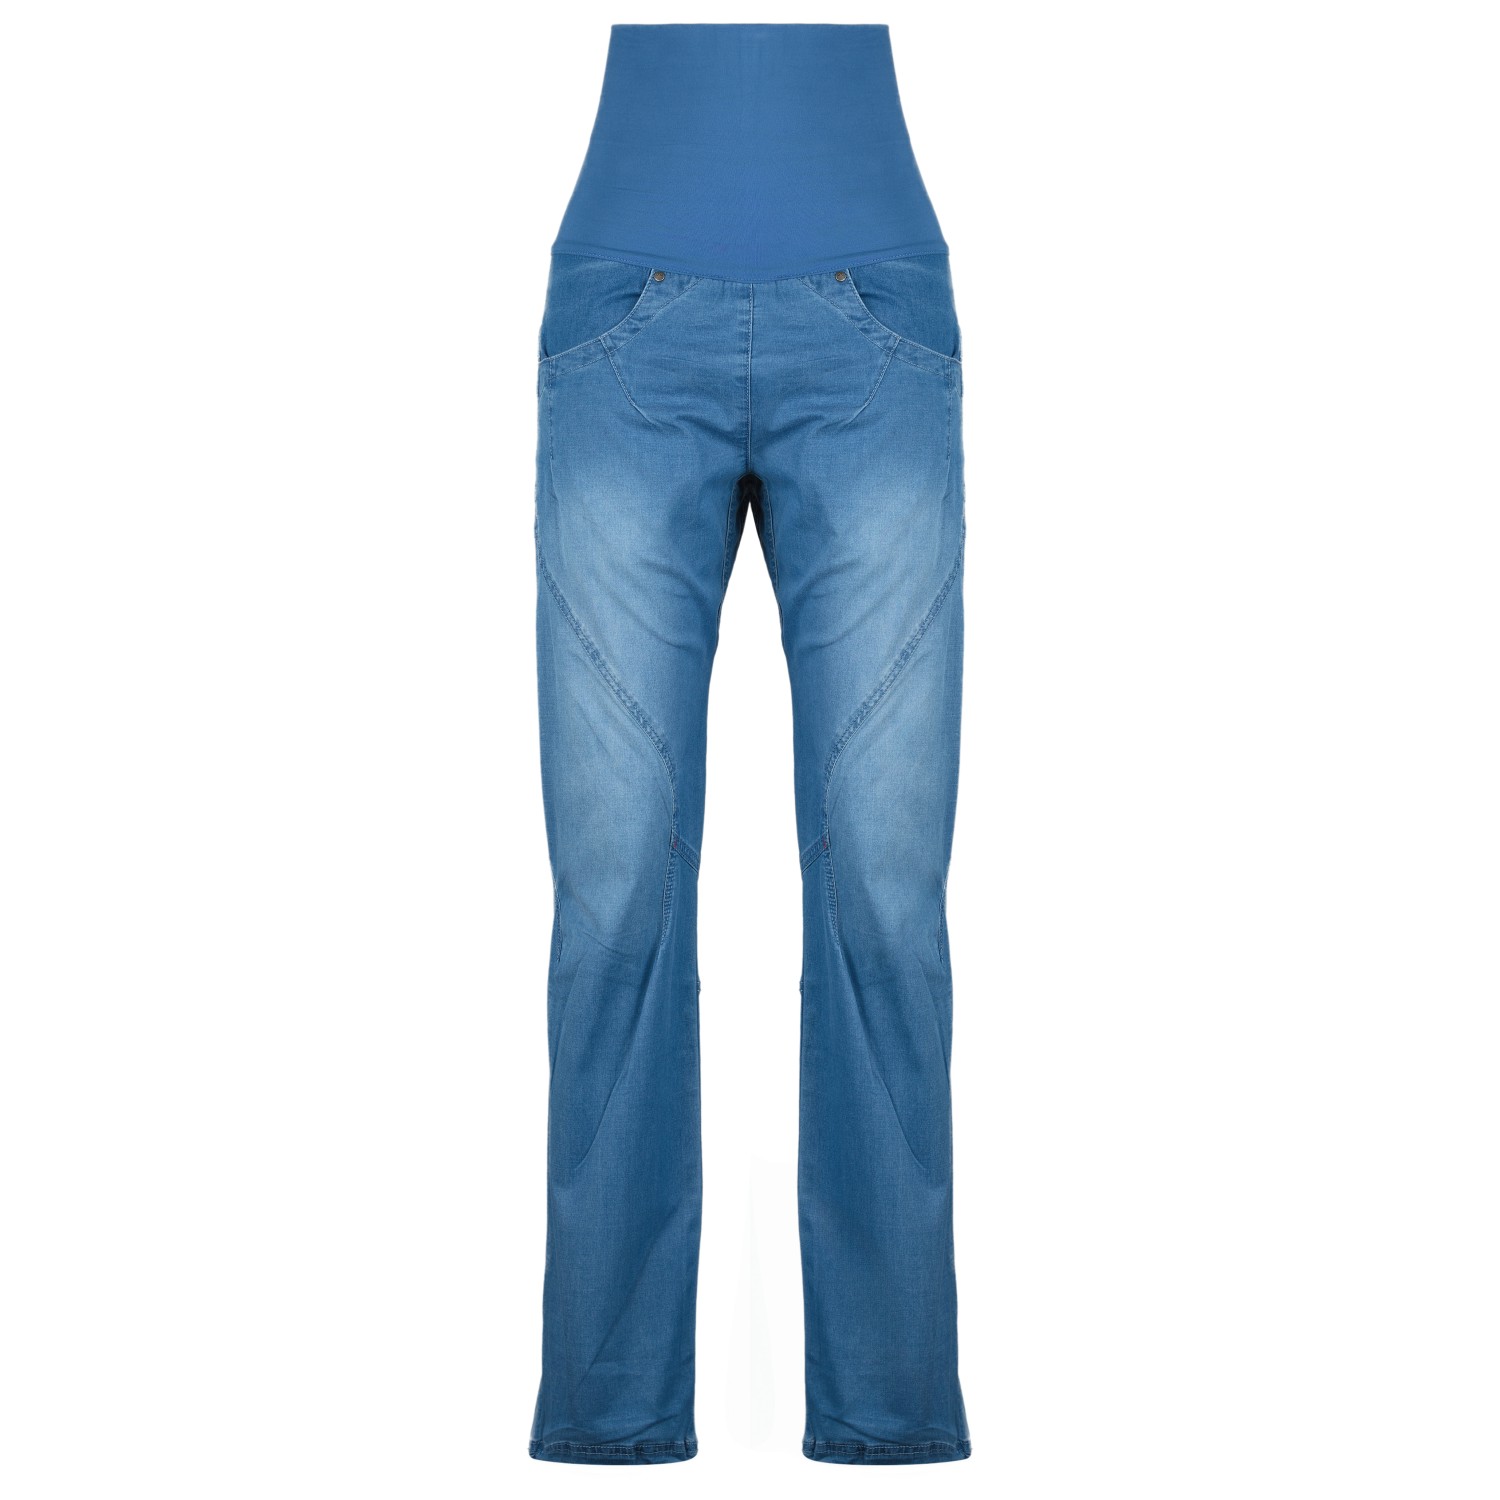 Альпинистские штаны Ocun Women's Noya Jeans, цвет Middle Blue